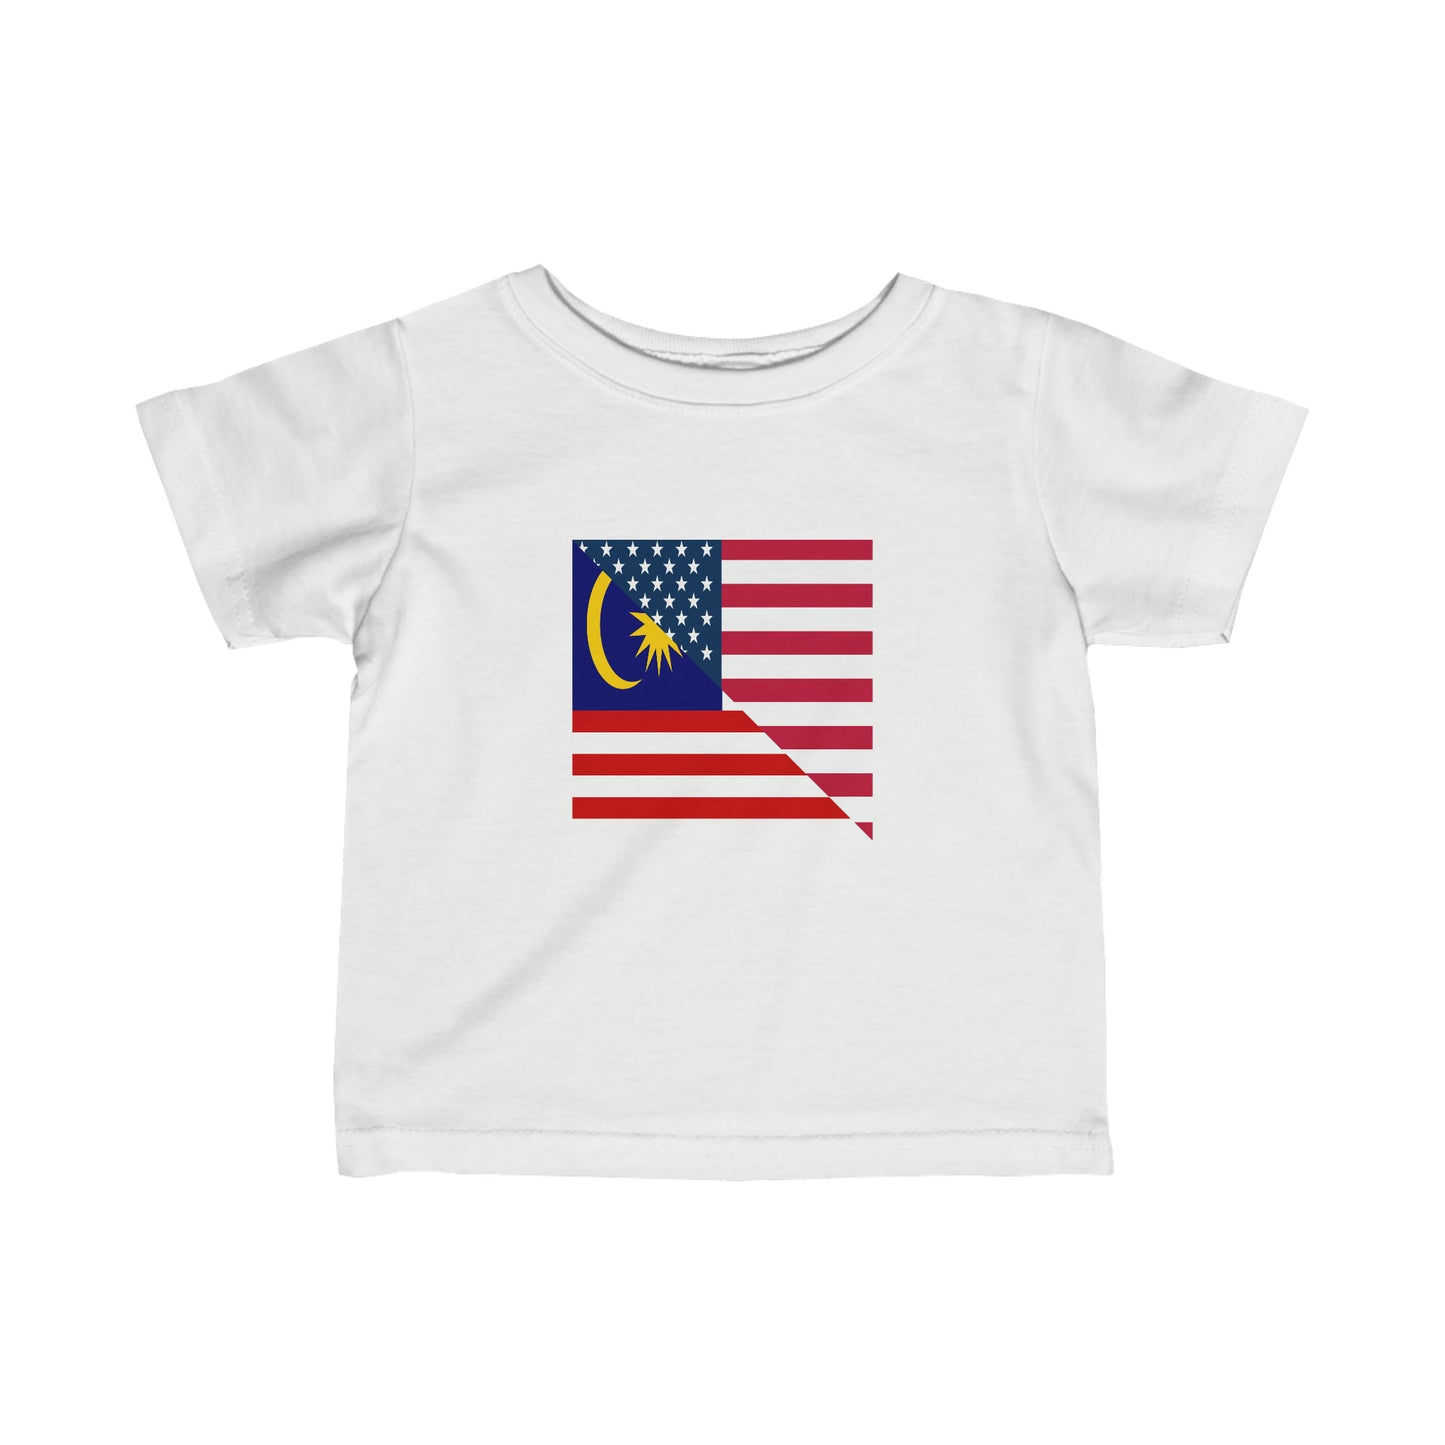 Infant Malaysia American Flag Half Malaysian USA  Toddler Tee Shirt